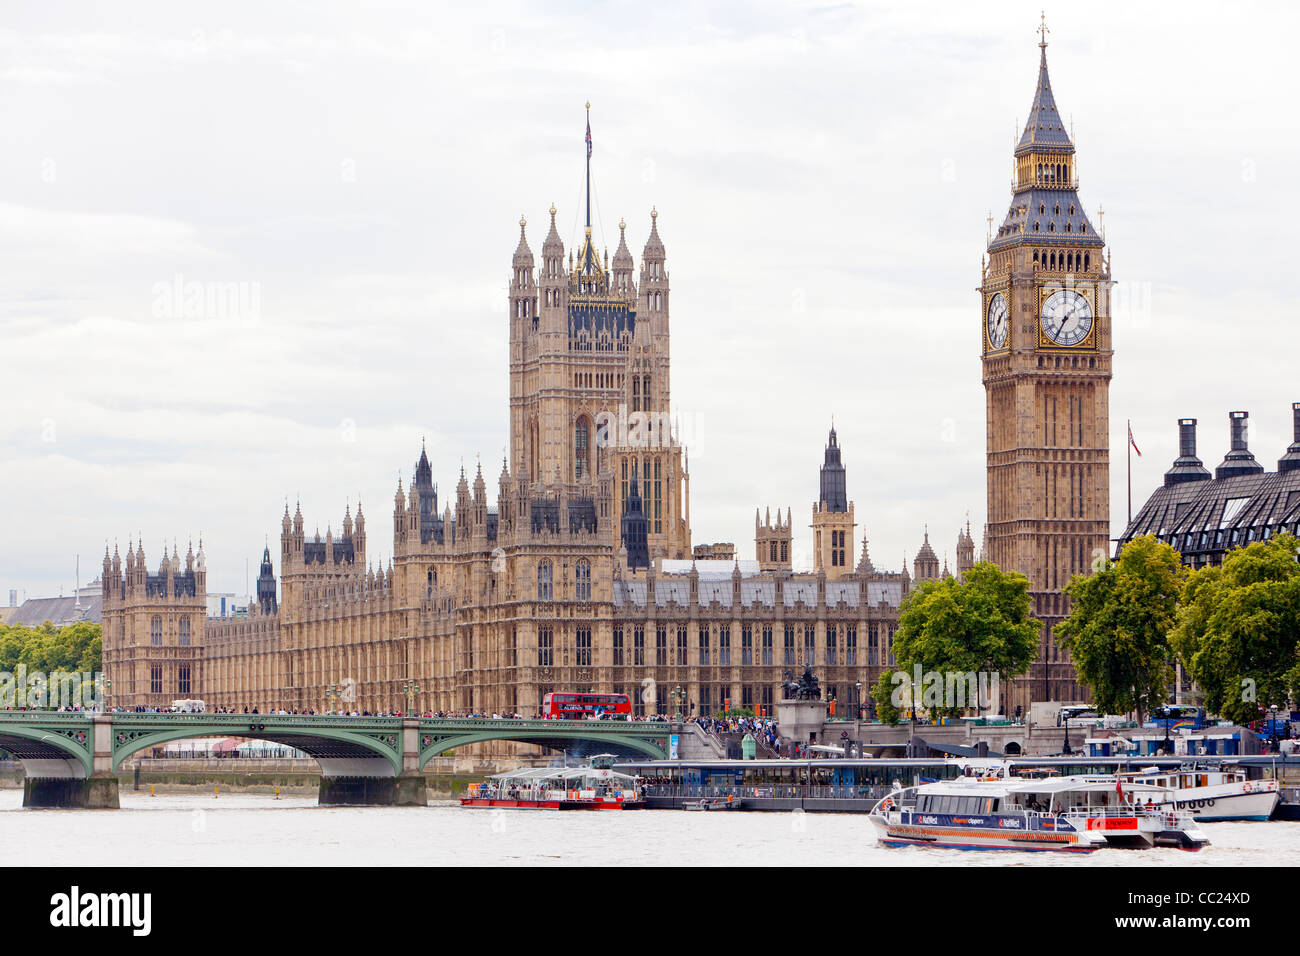 Una vista de Londres, Las Casas del Parlamento, el Big Ben y cruceros por el Río Támesis. Foto de stock